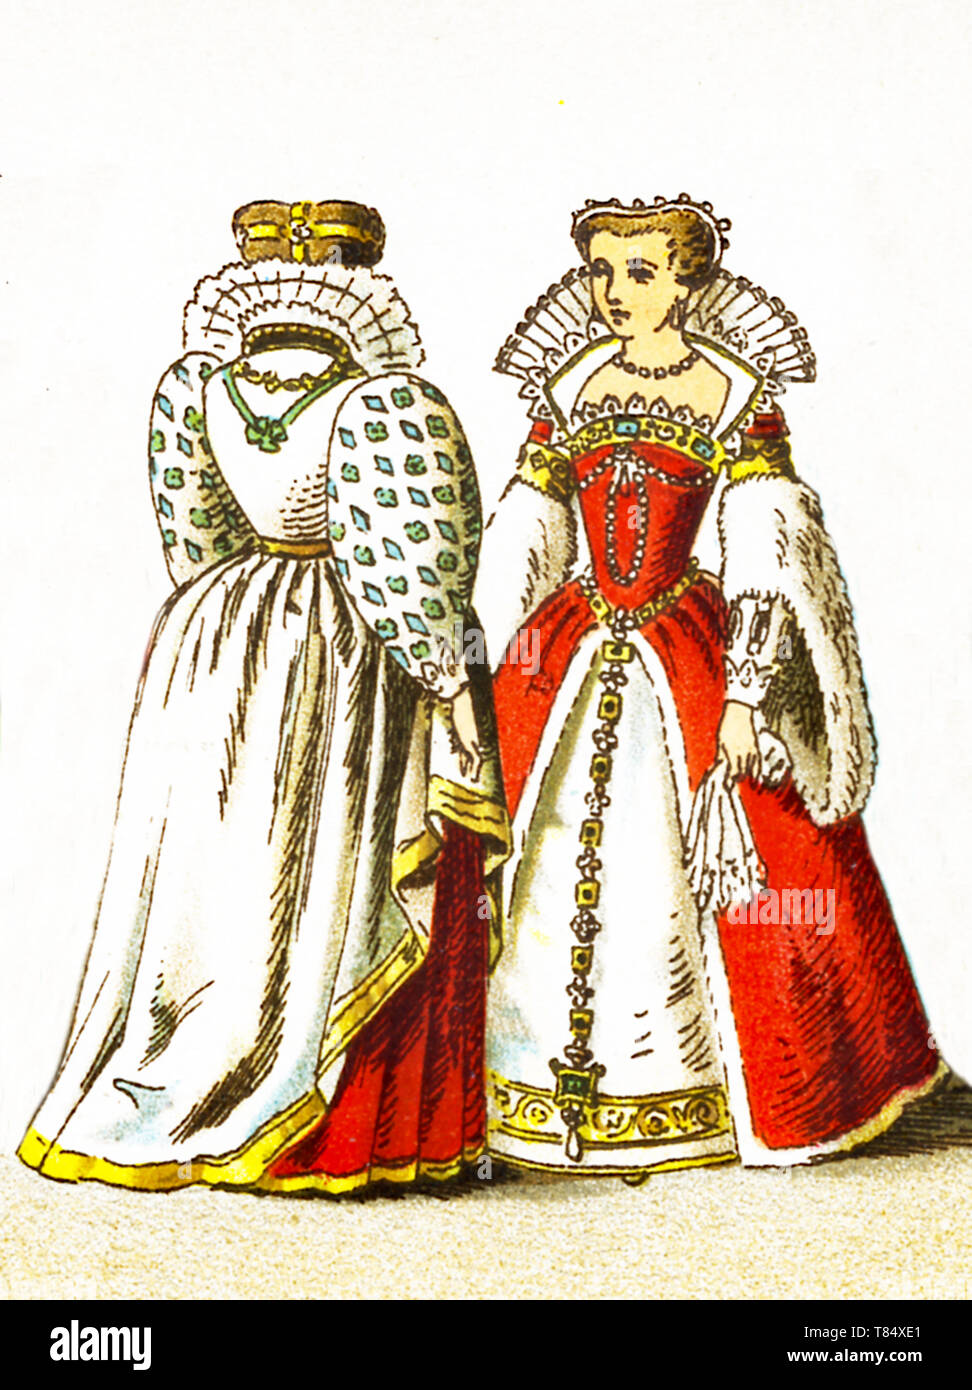 Les chiffres représentés ici sont les français entre 1550 et 1600. Ils sont, de gauche à droite : un tribunal costumes portés par une noble dame à l'époque et Louisa de Lorraine l'épouse de Henri III. L'illustration dates à 1882. Banque D'Images